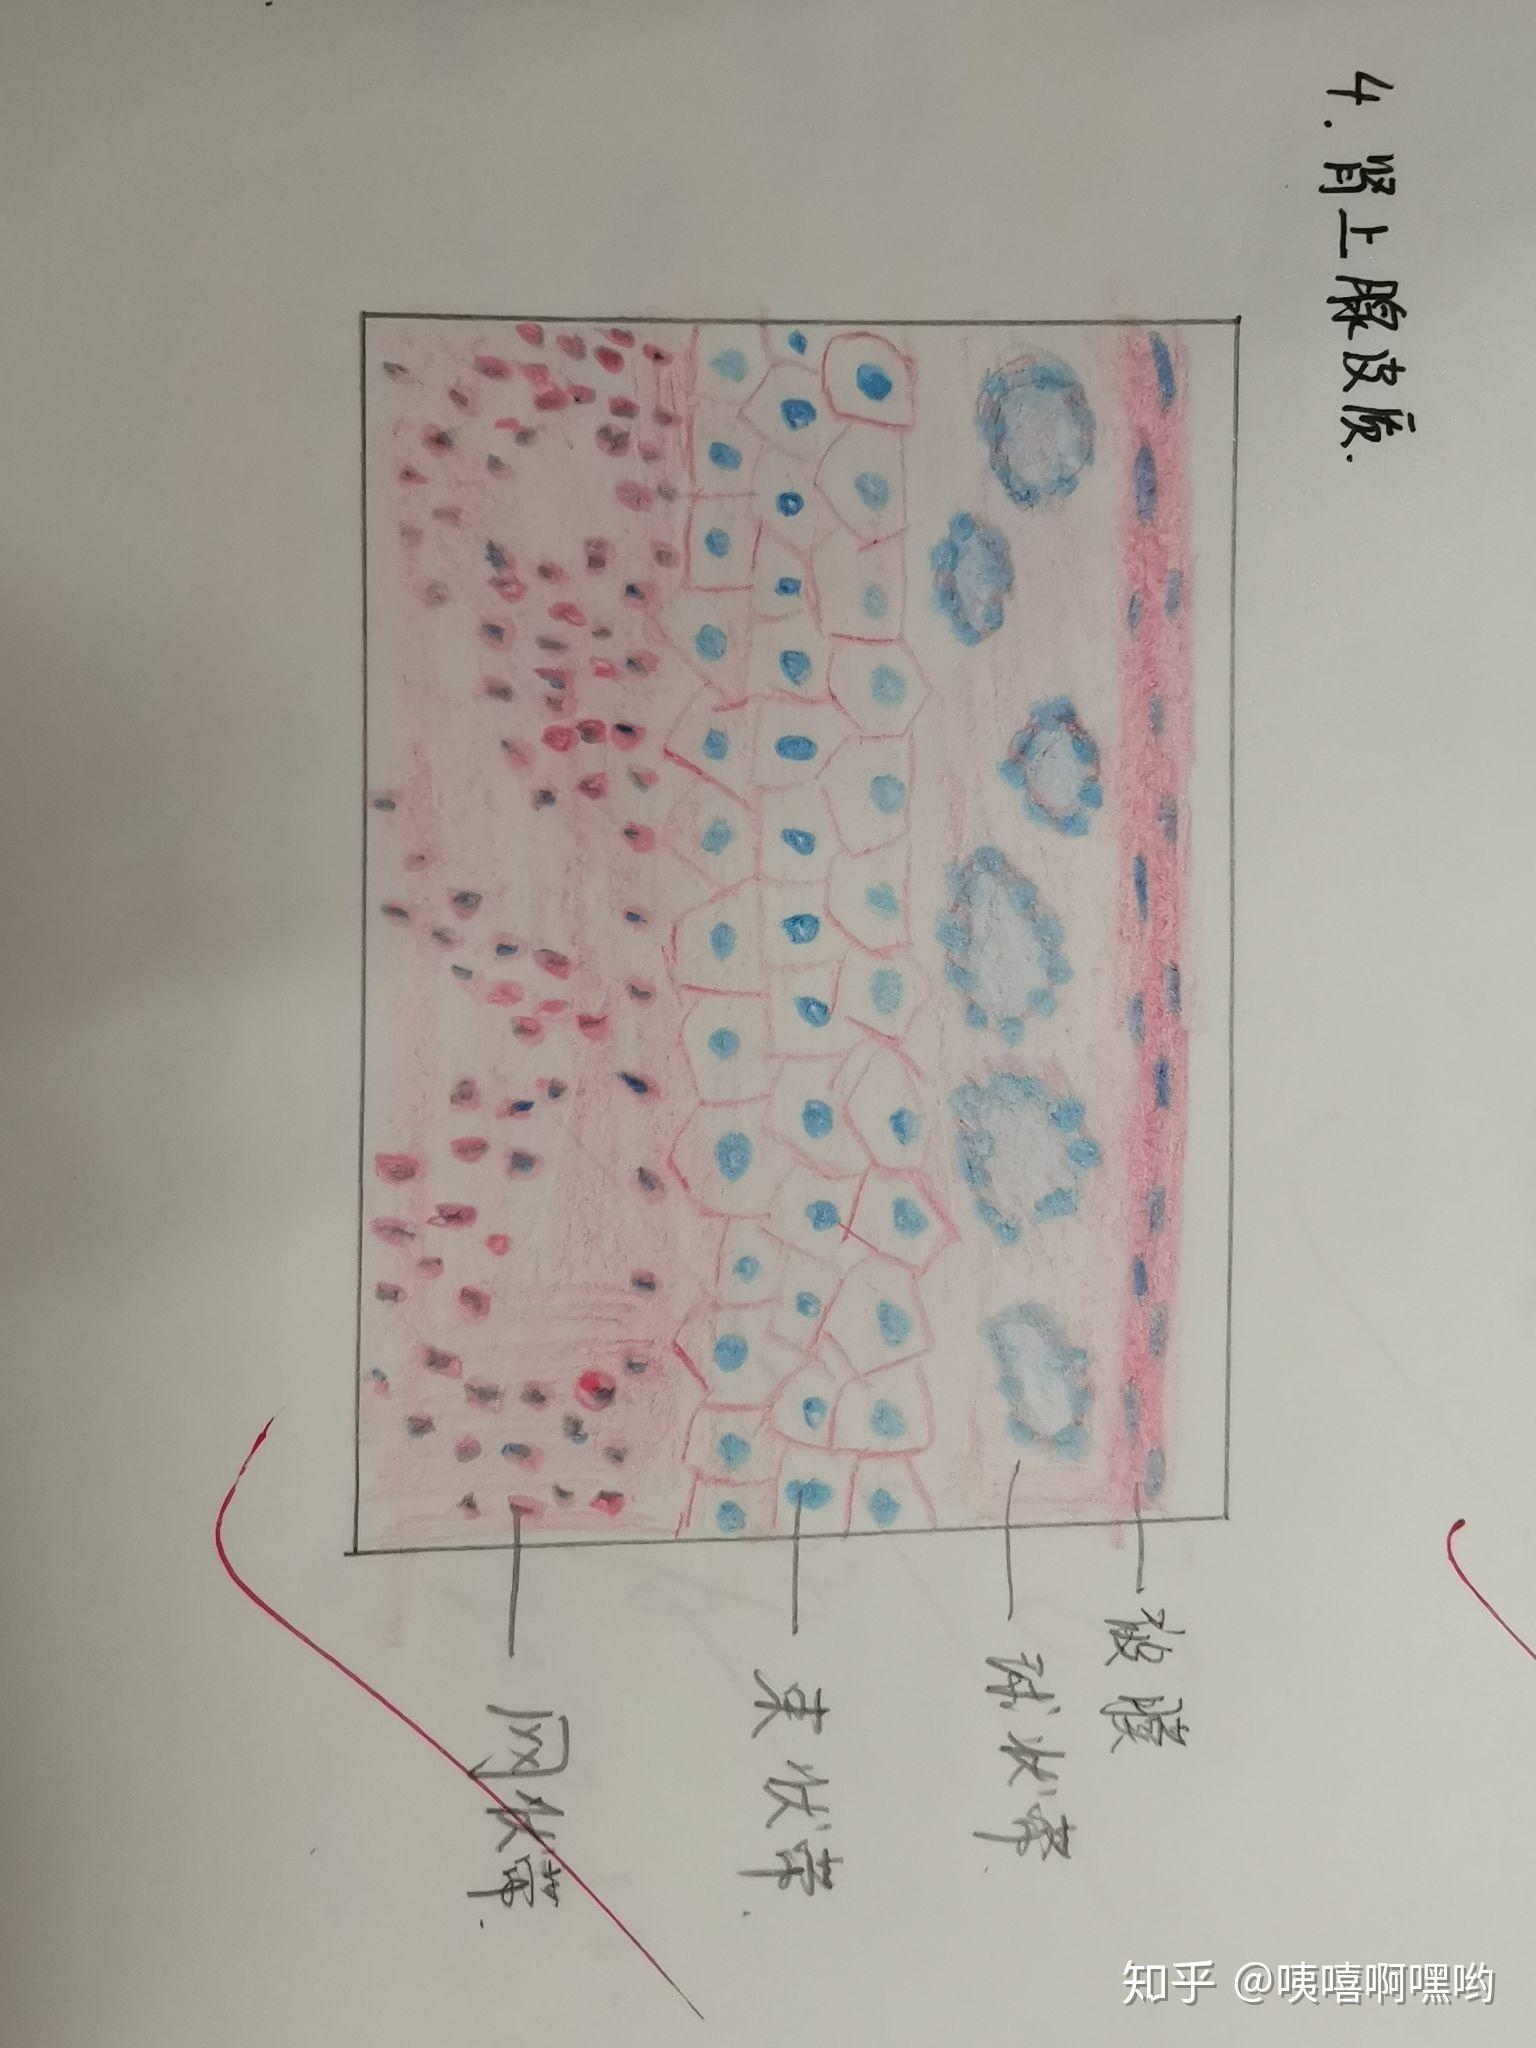 组胚红蓝铅笔手绘 